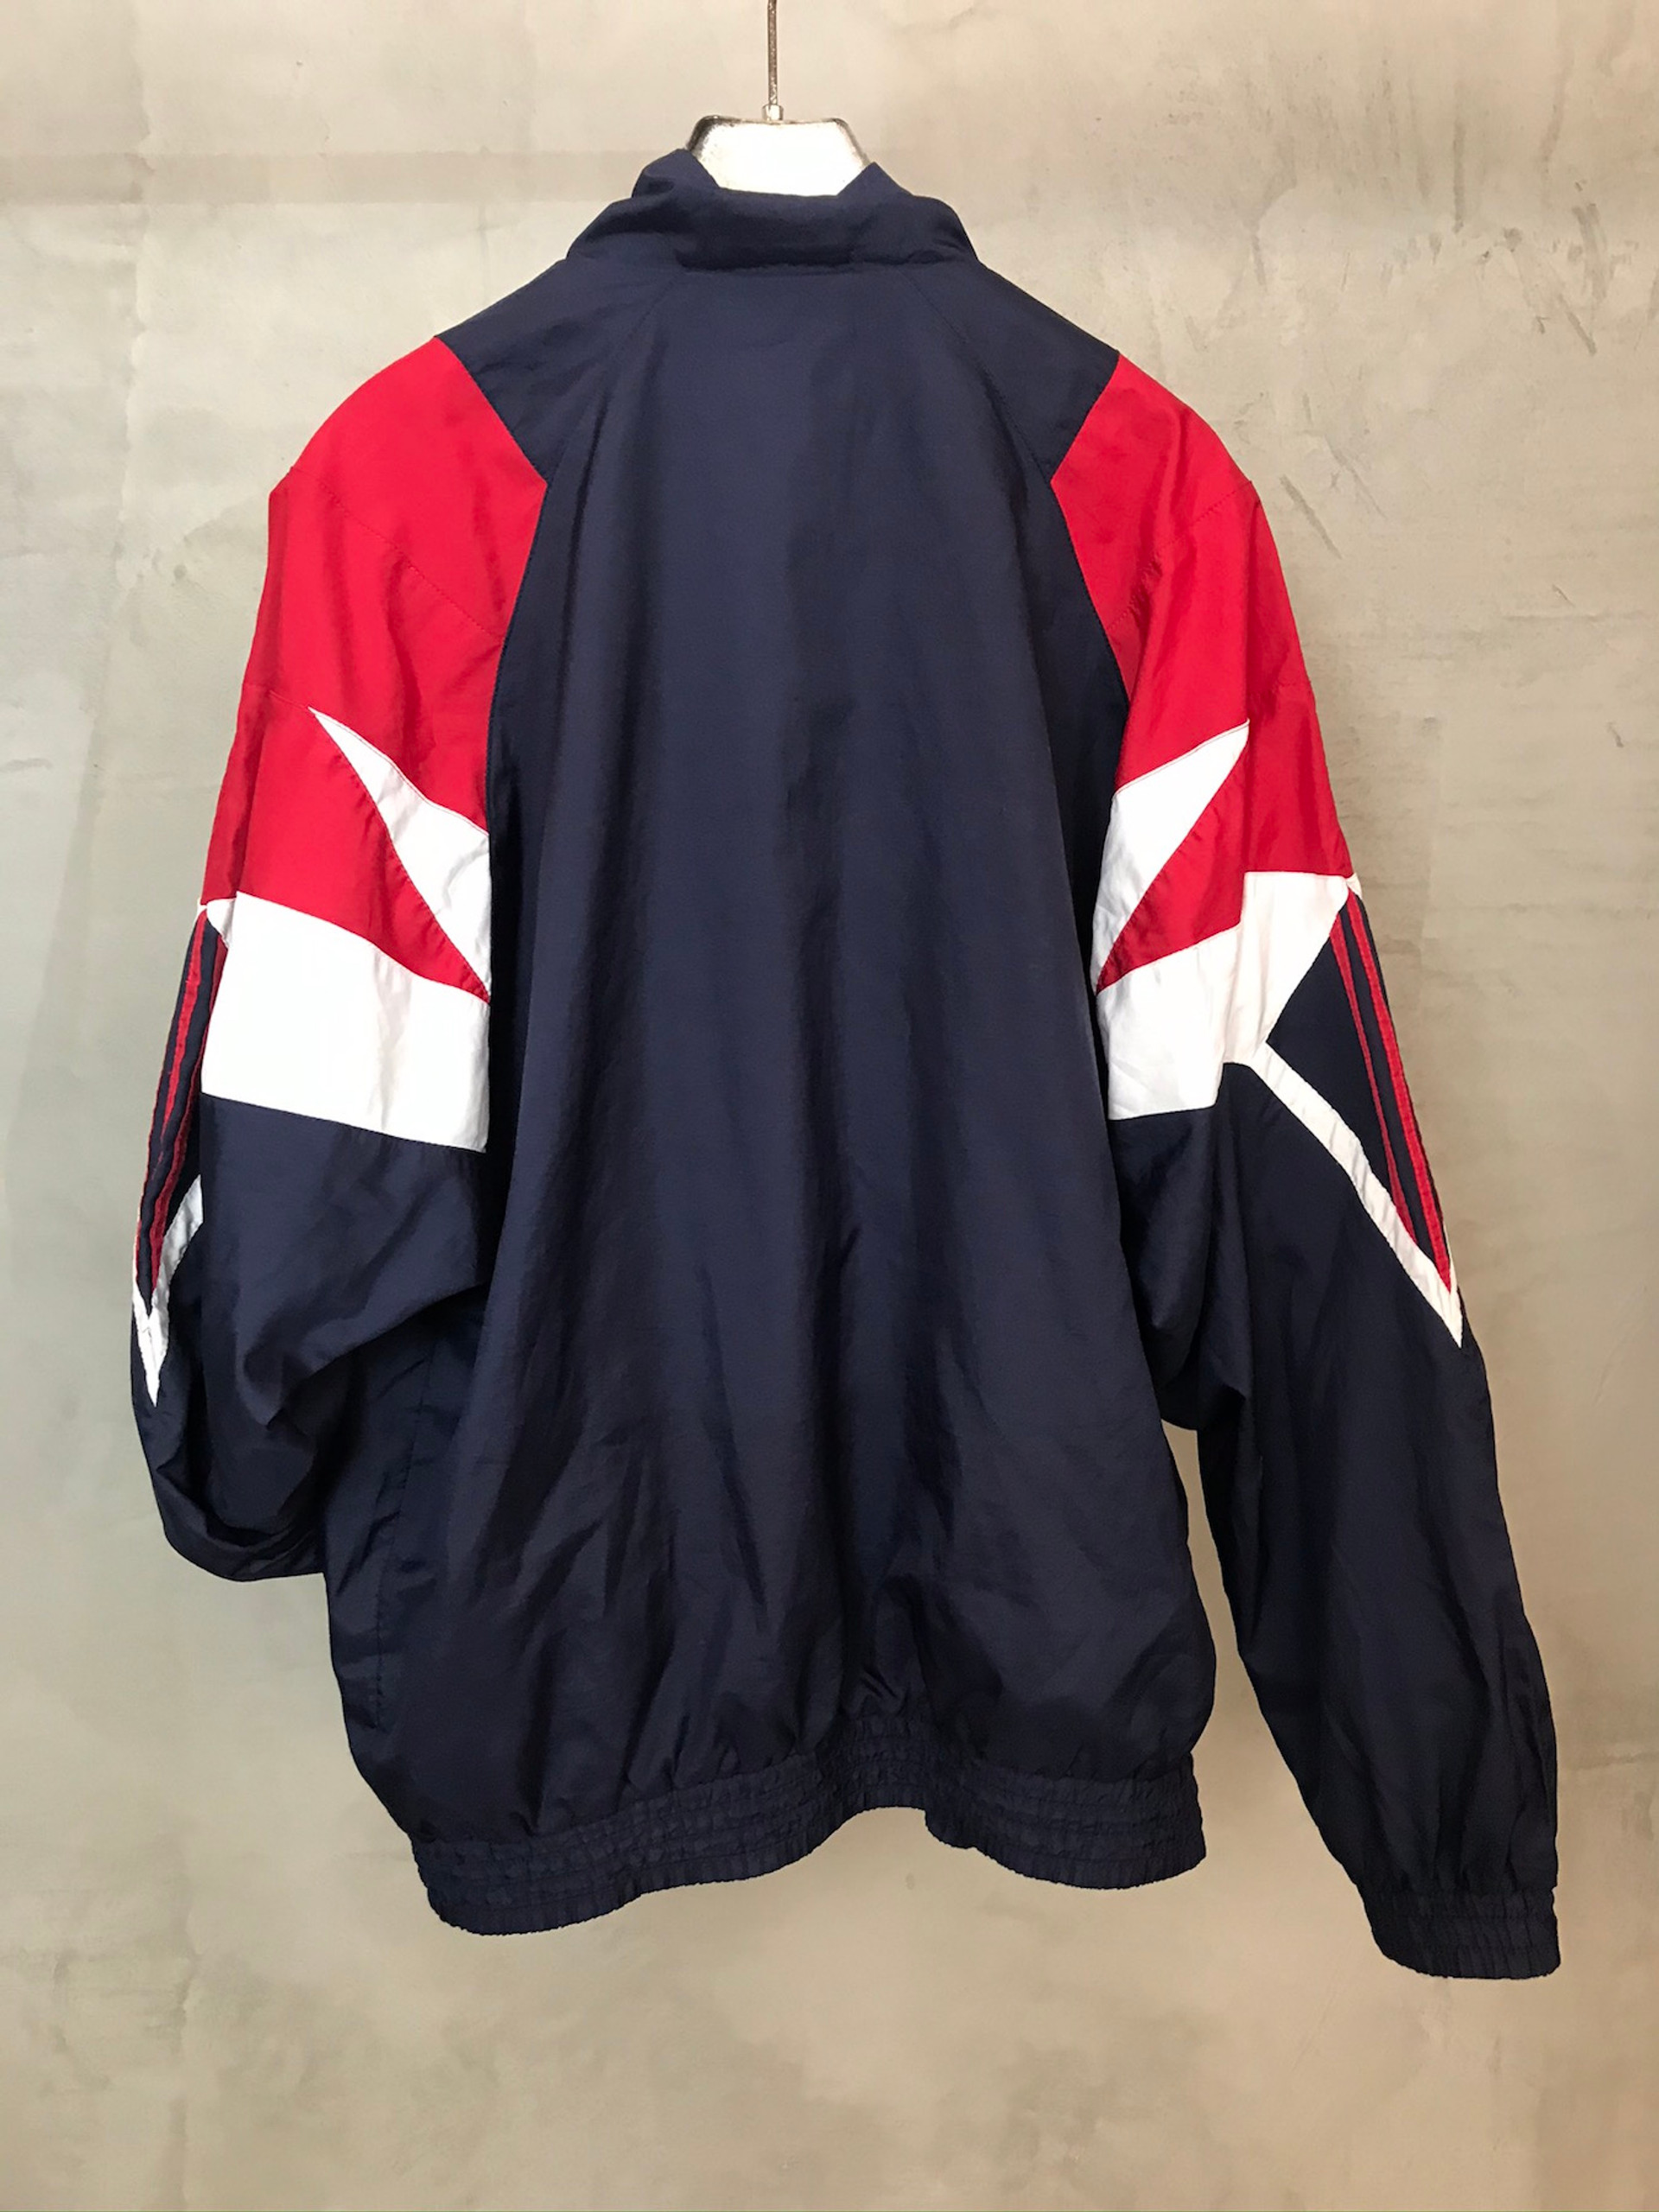 Adidas Jacket Anos 90, Azul Branco e Vermelho - A Outra Face da Lua